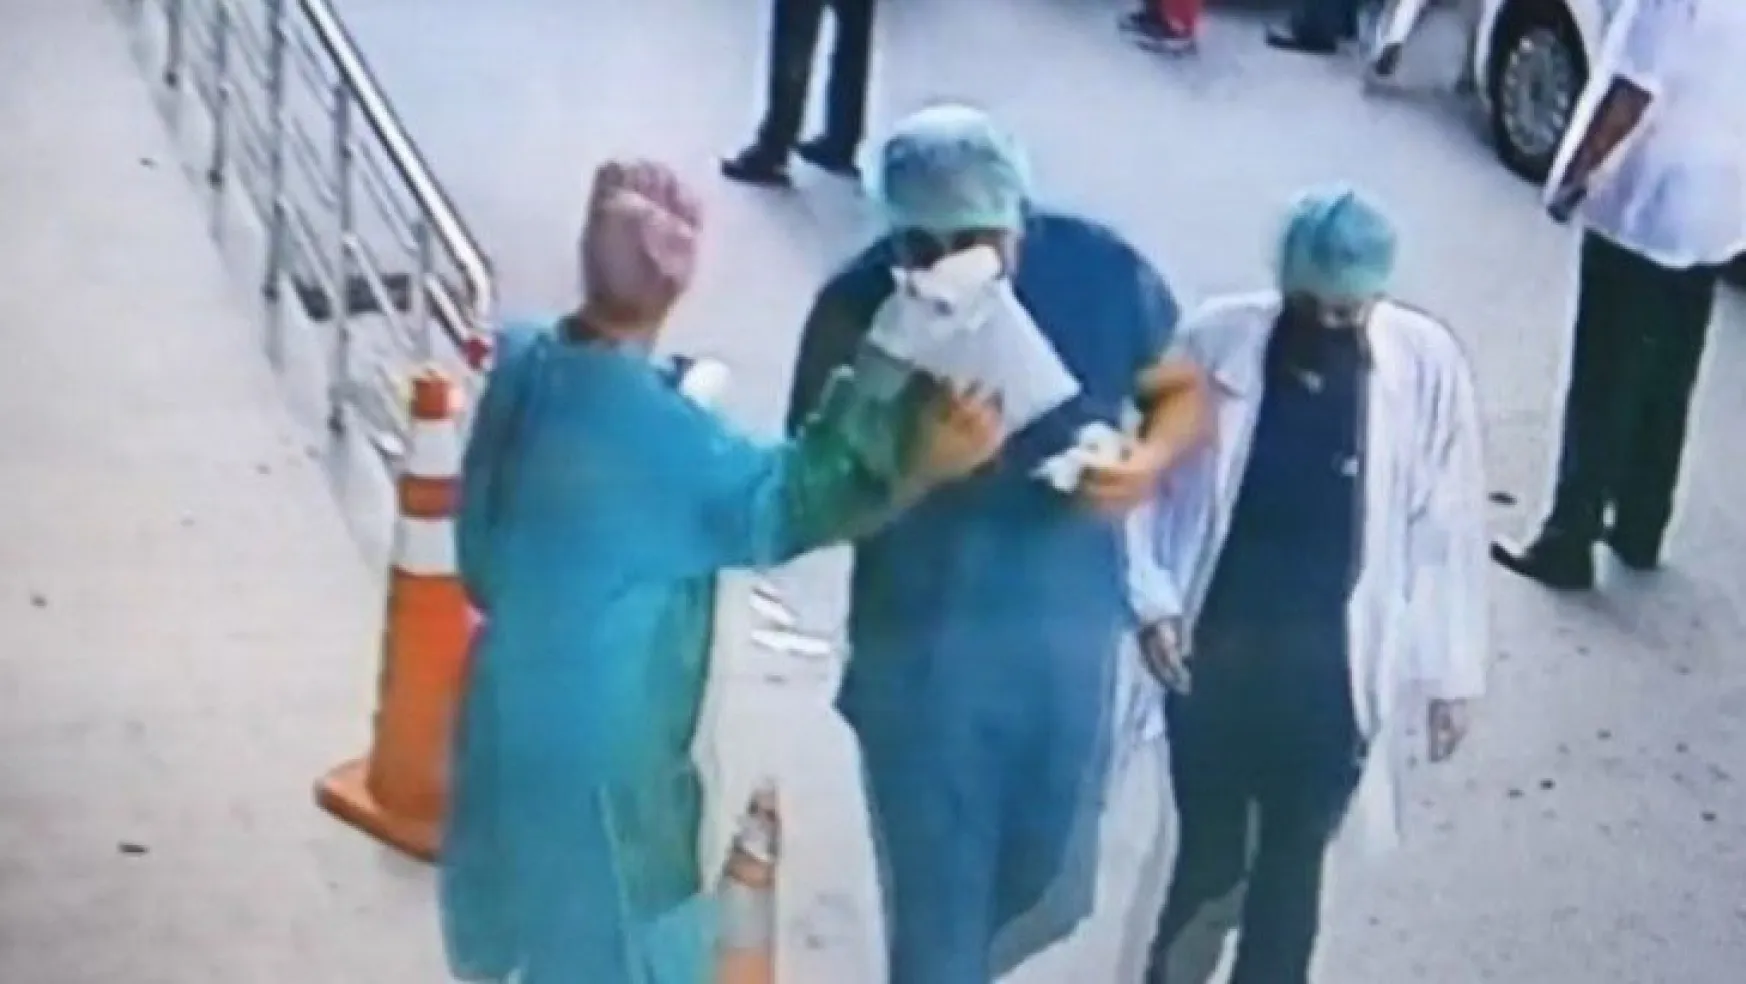 Hastane çalışanlarına saldıran 2 kişi tutuklandı!